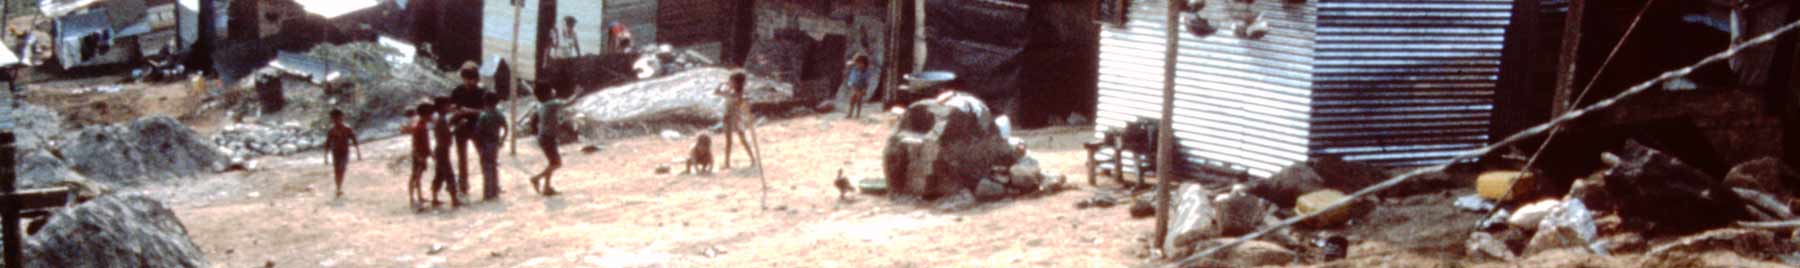 Image of poor children in a Columbian slum